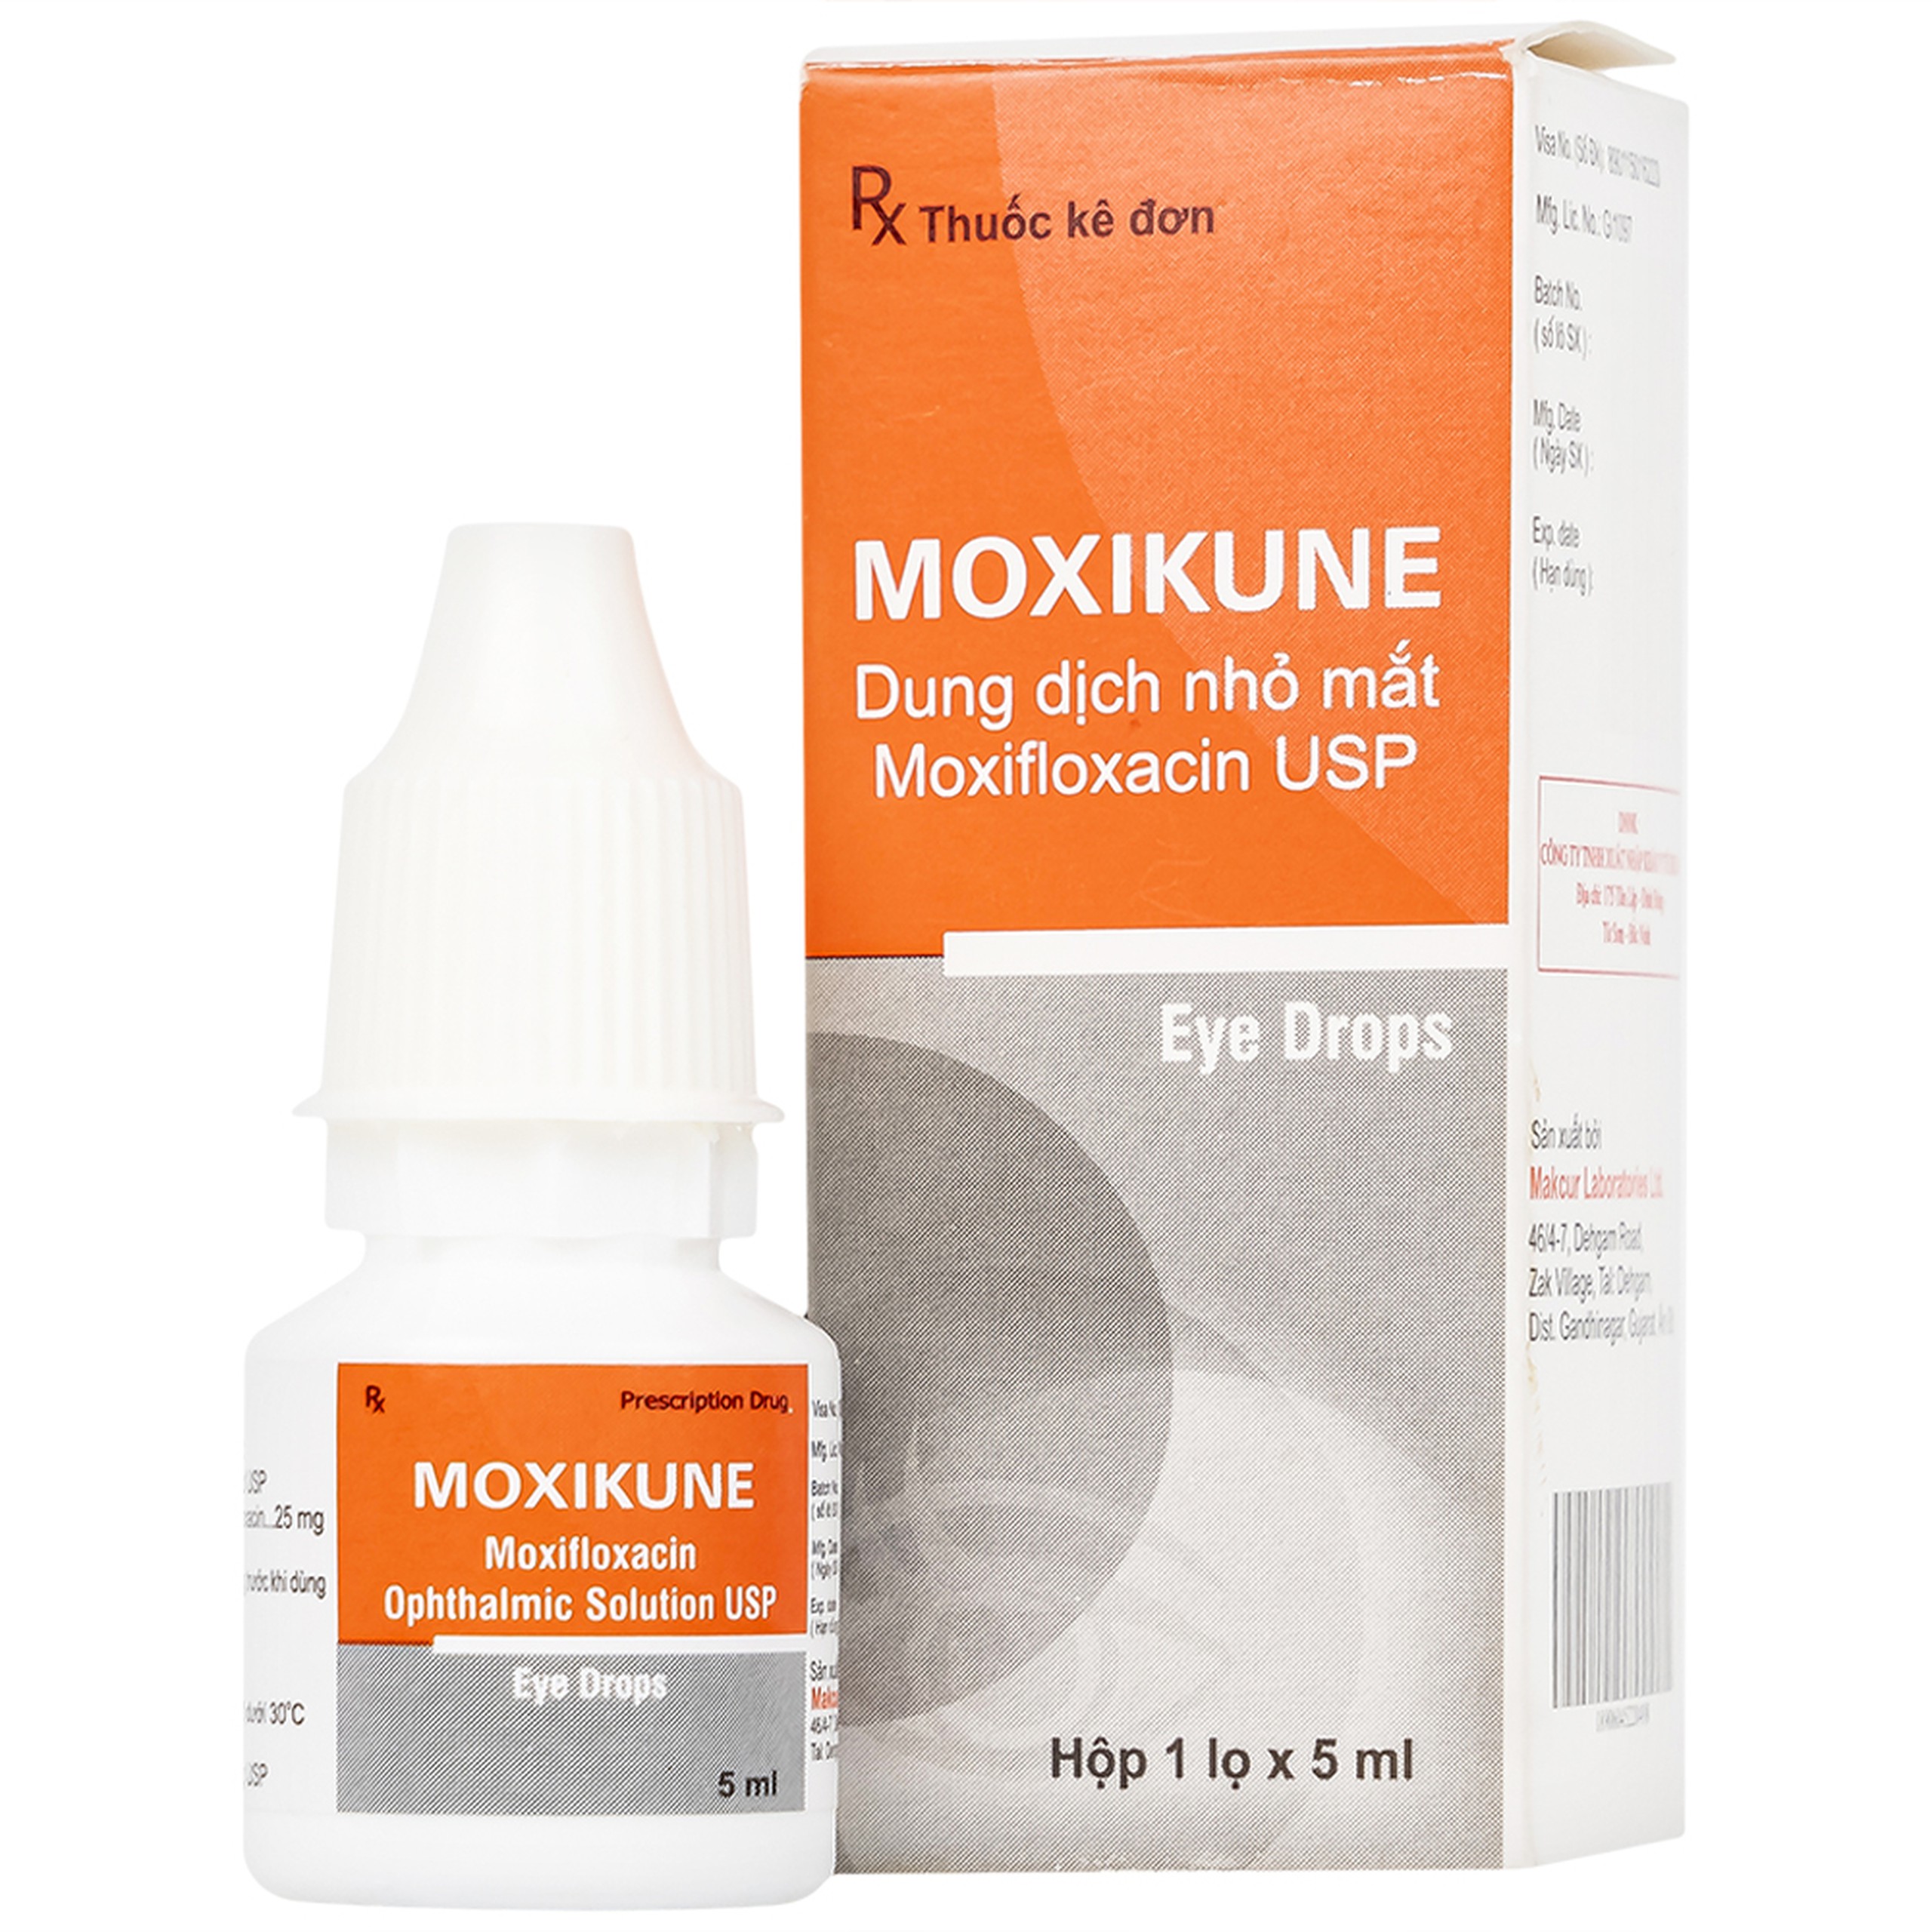 Dung dịch nhỏ mắt Moxikune điều trị các tình trạng nhiễm khuẩn mắt, chống viêm sau phẫu thuật (5ml)